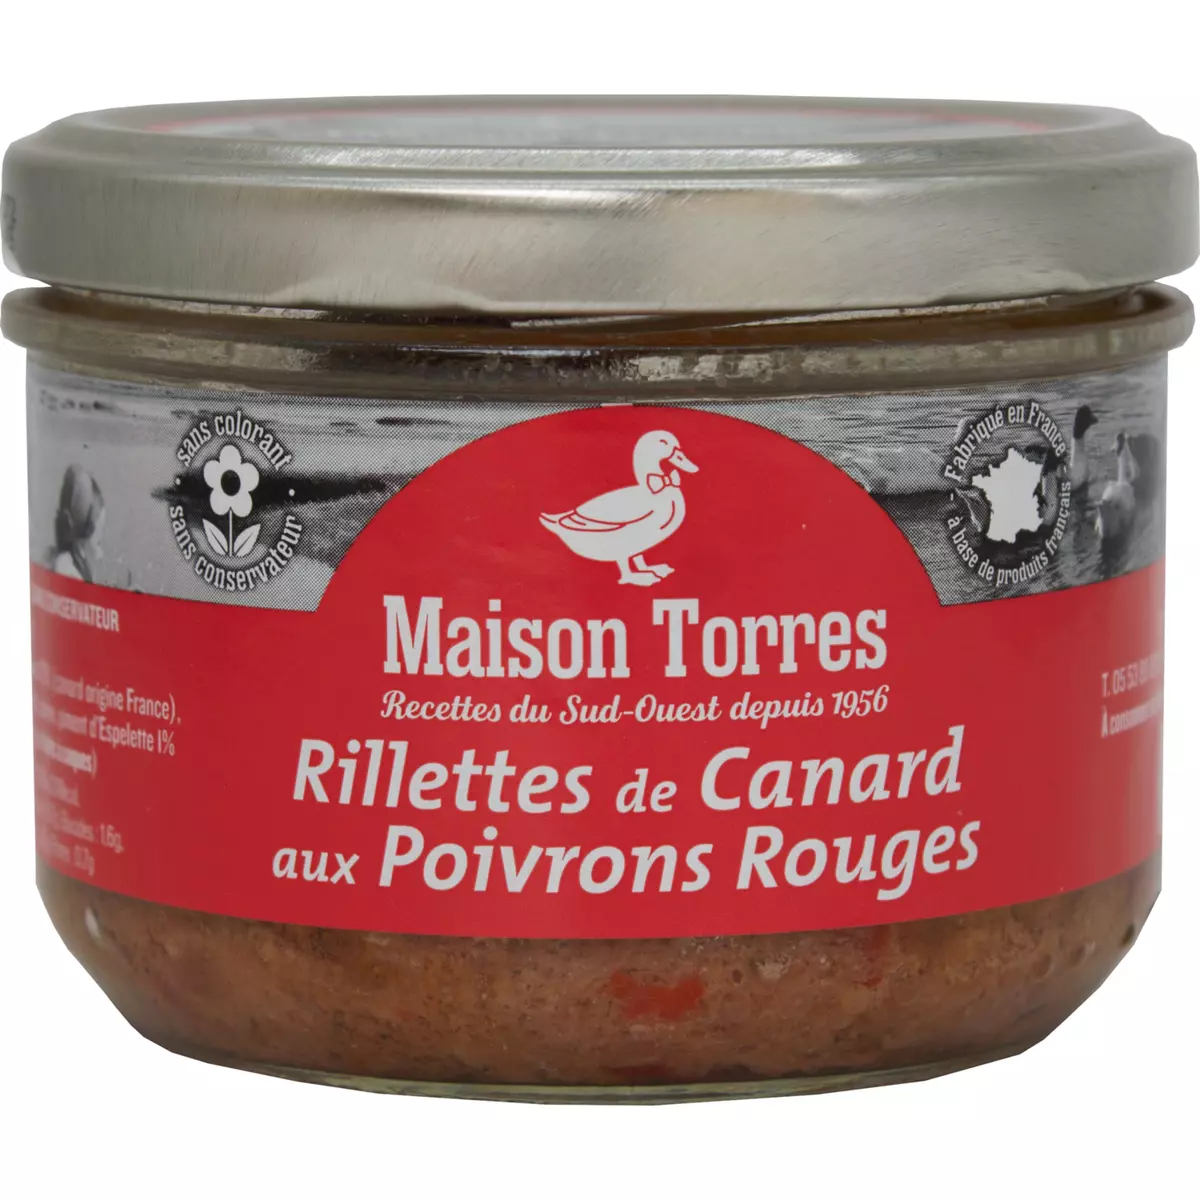 MAISON TORRES Rillettes de Canard aux Poivrons Rouges 180g